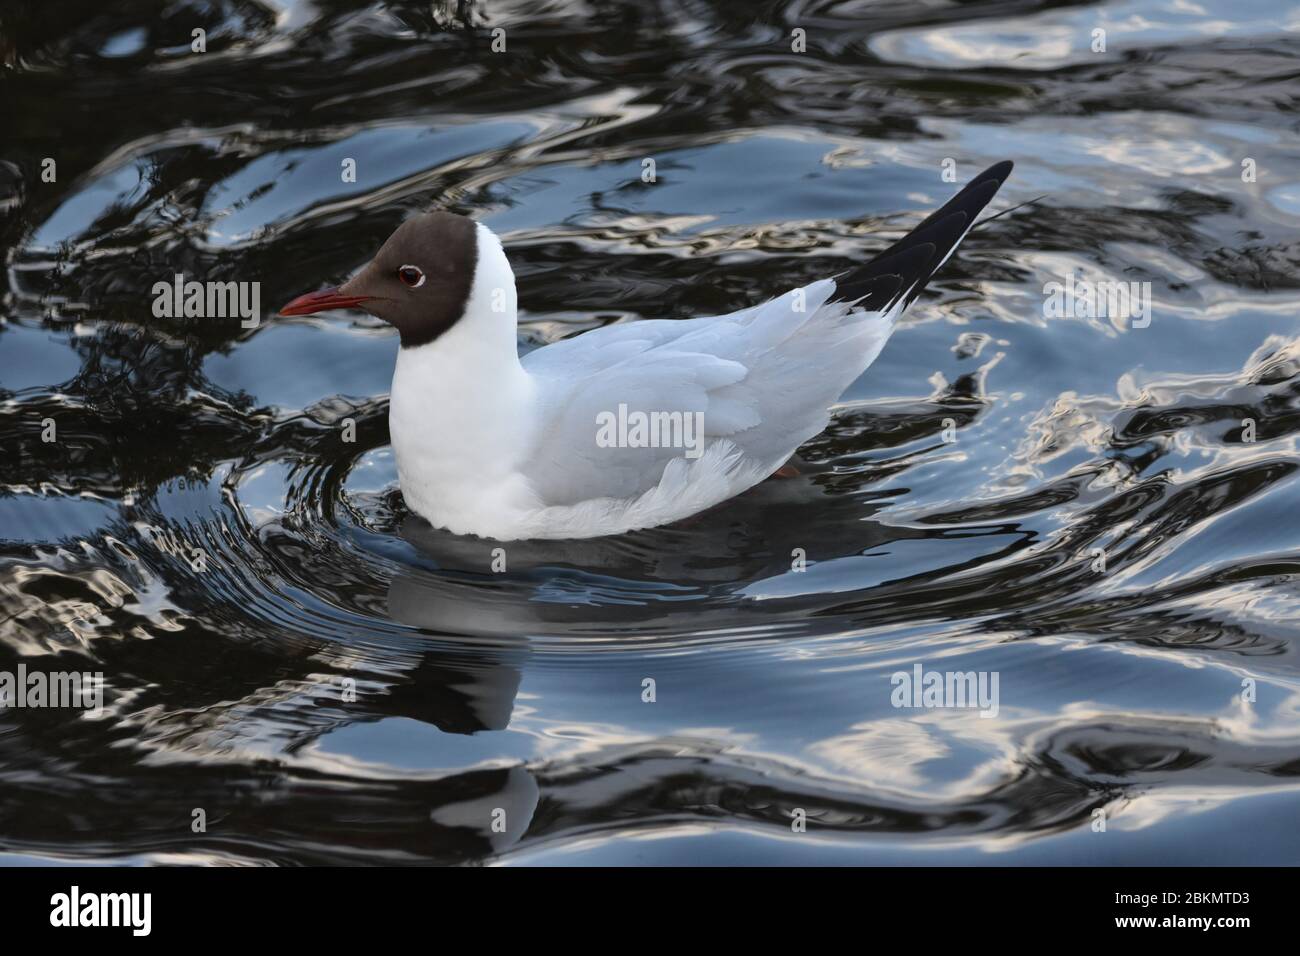 Une image rapprochée d'un canard dans l'eau avec de belles ondulations d'eau Banque D'Images